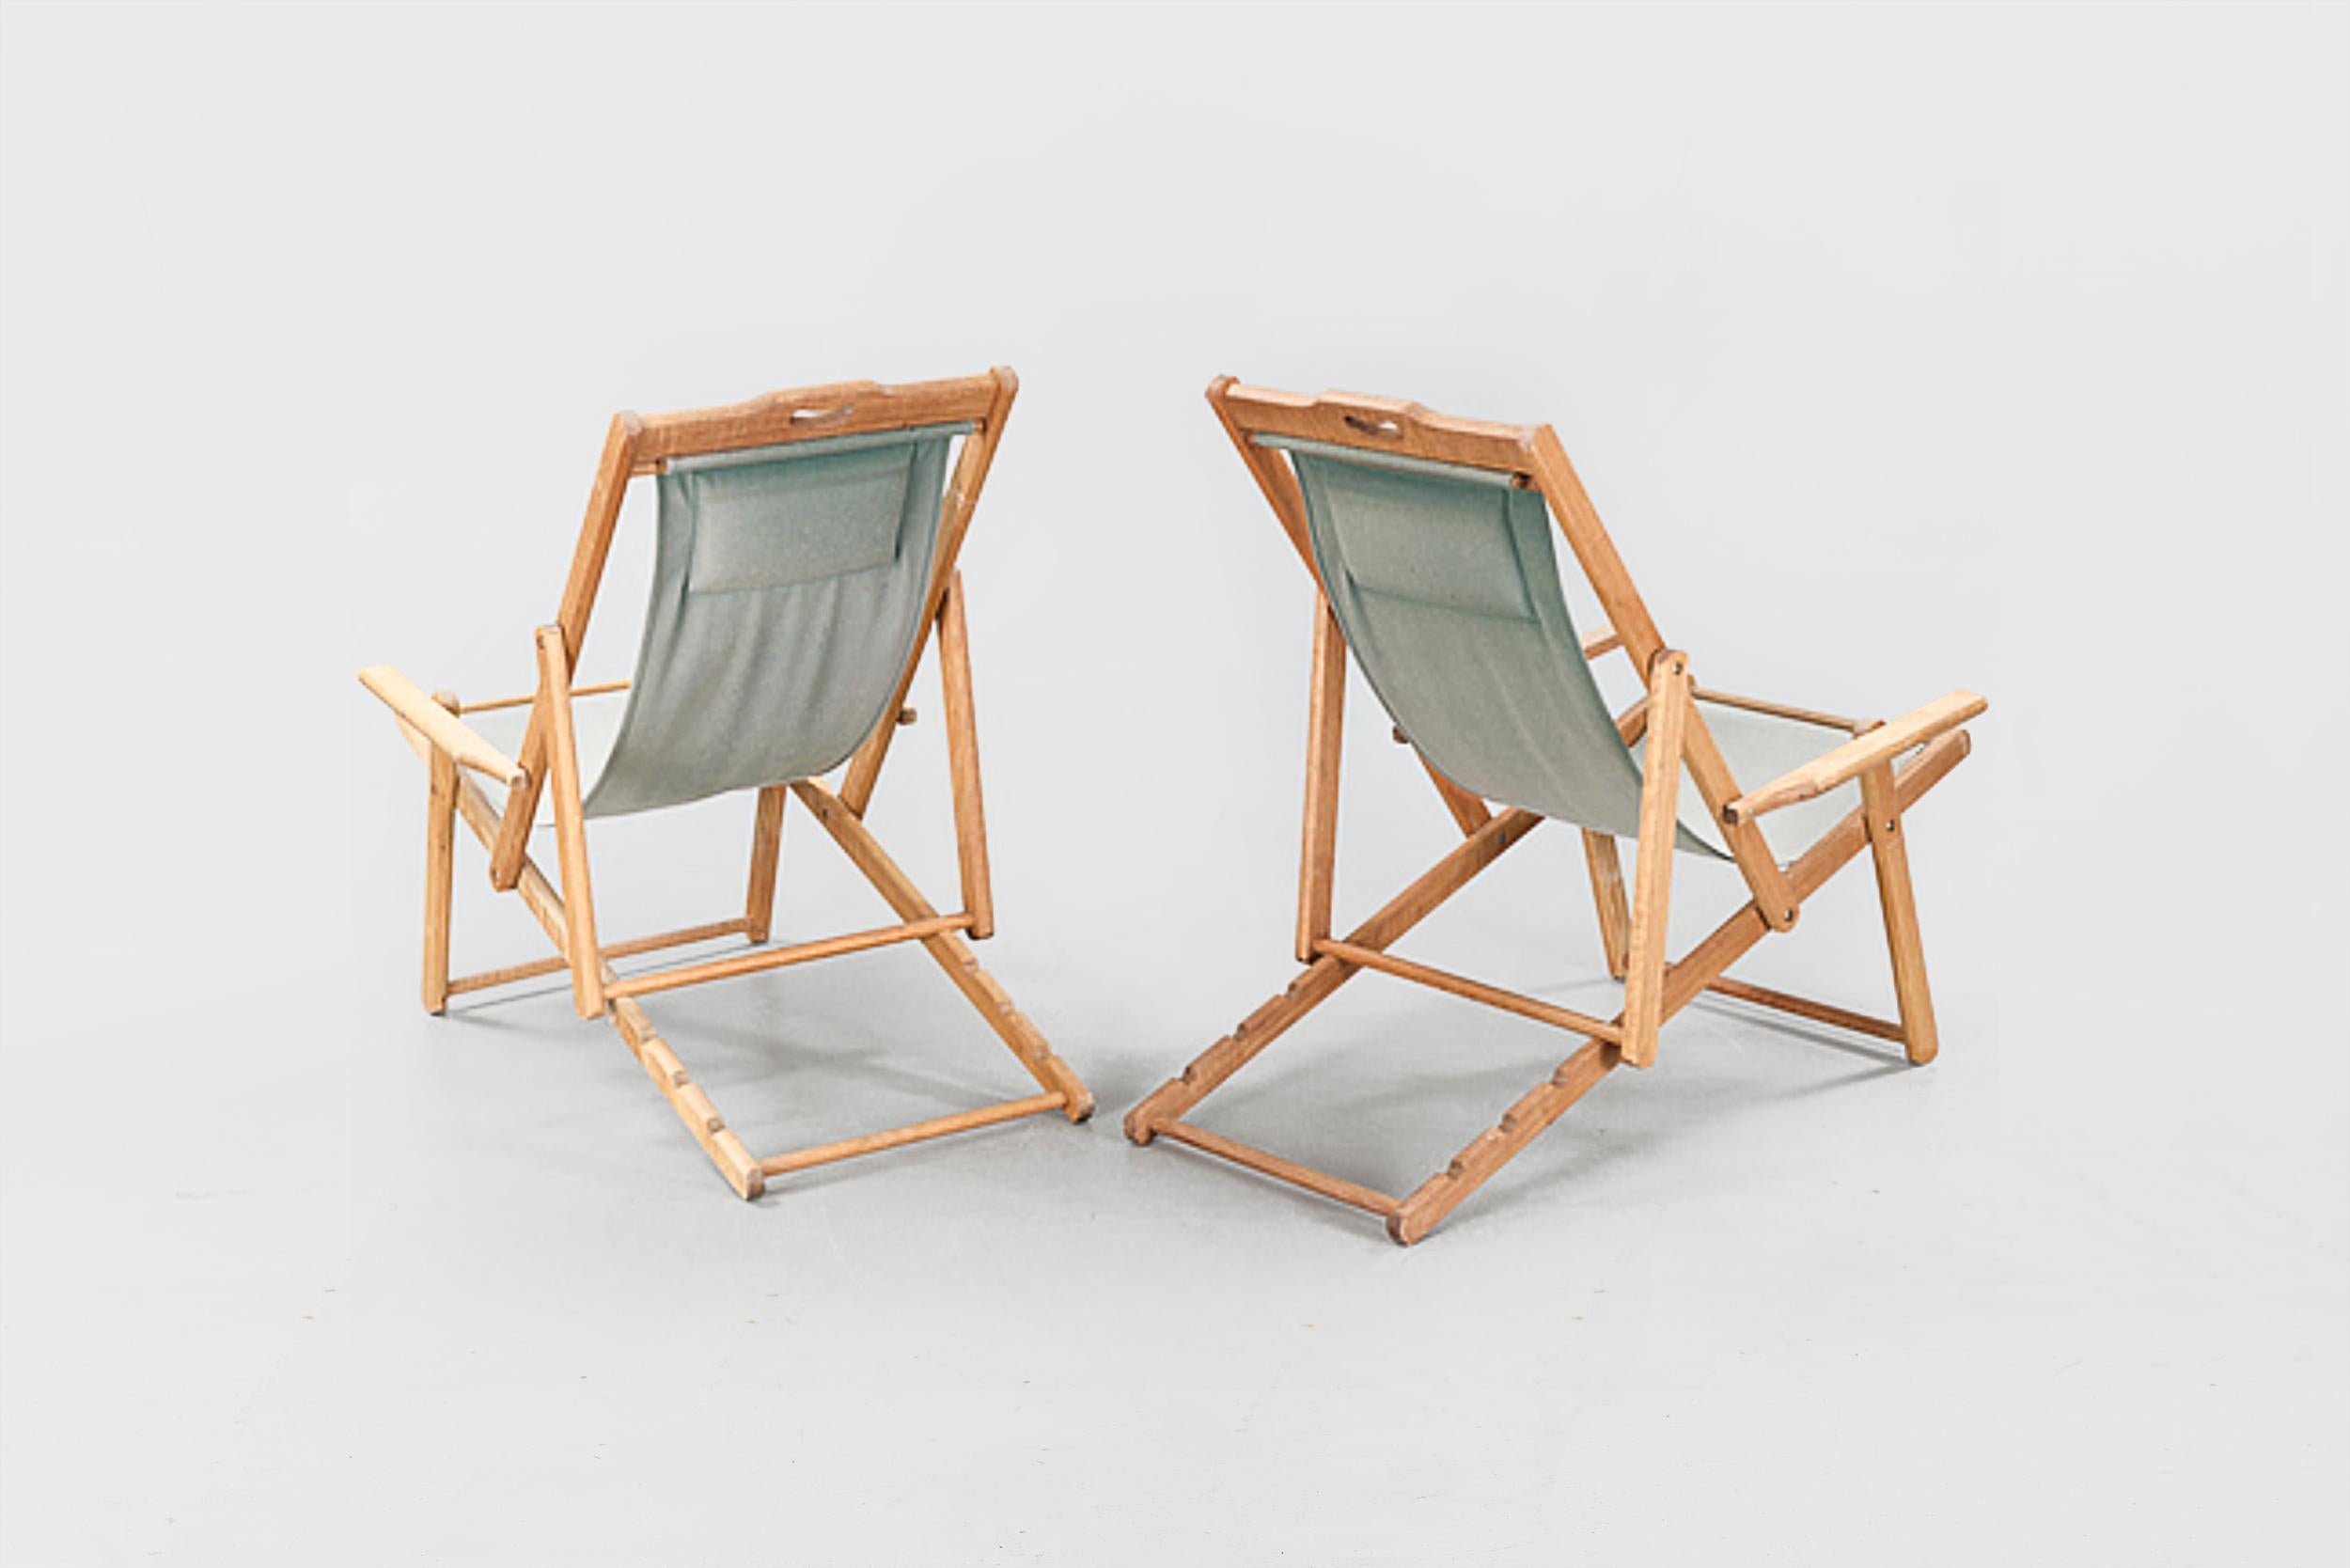 Chaises longues suédoises du 20ème siècle, 1940 ou chaises Safari
Réglable, bois teint et tissu vert.